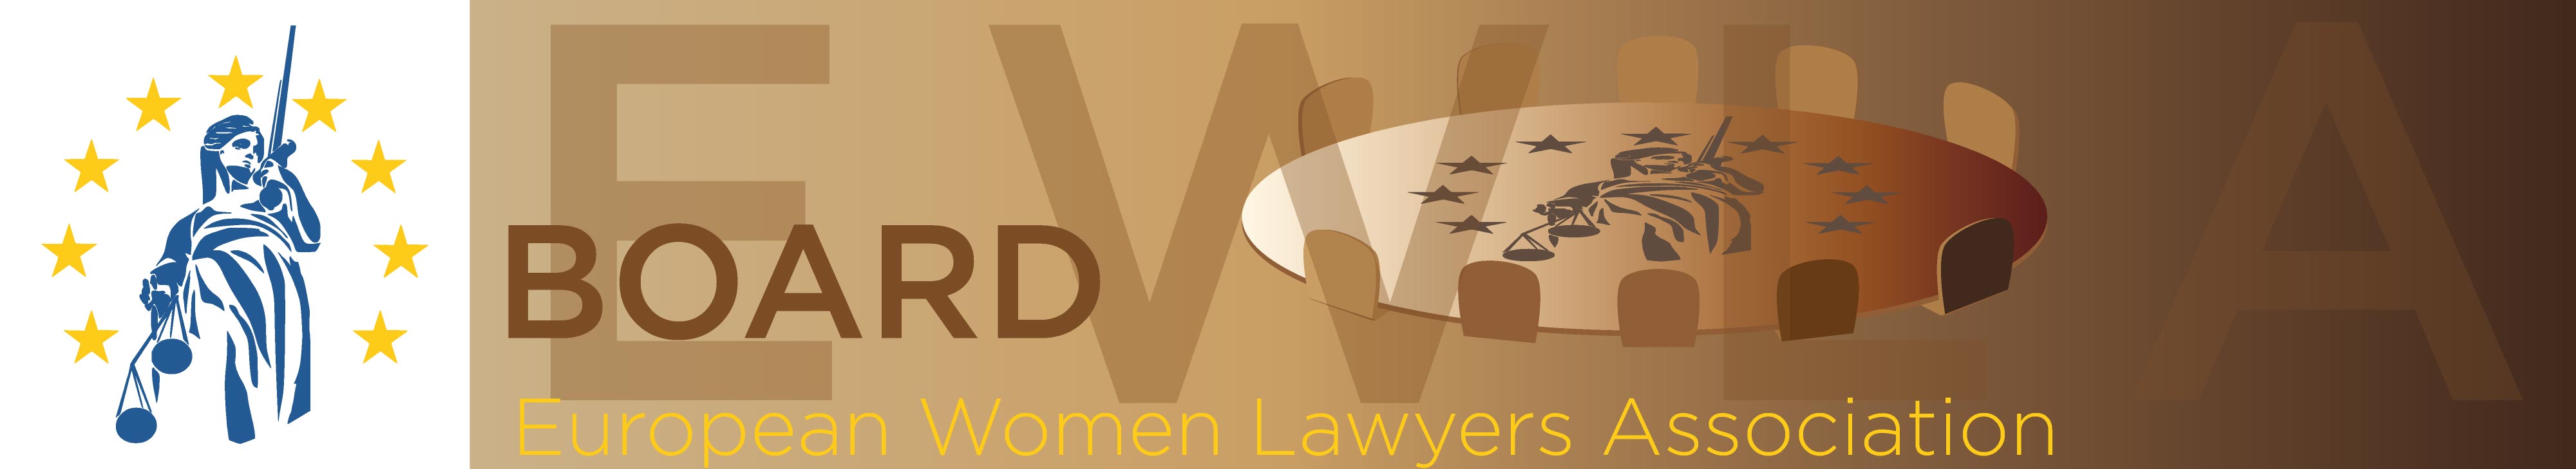 EWLA Board - European Women Lawyers Association